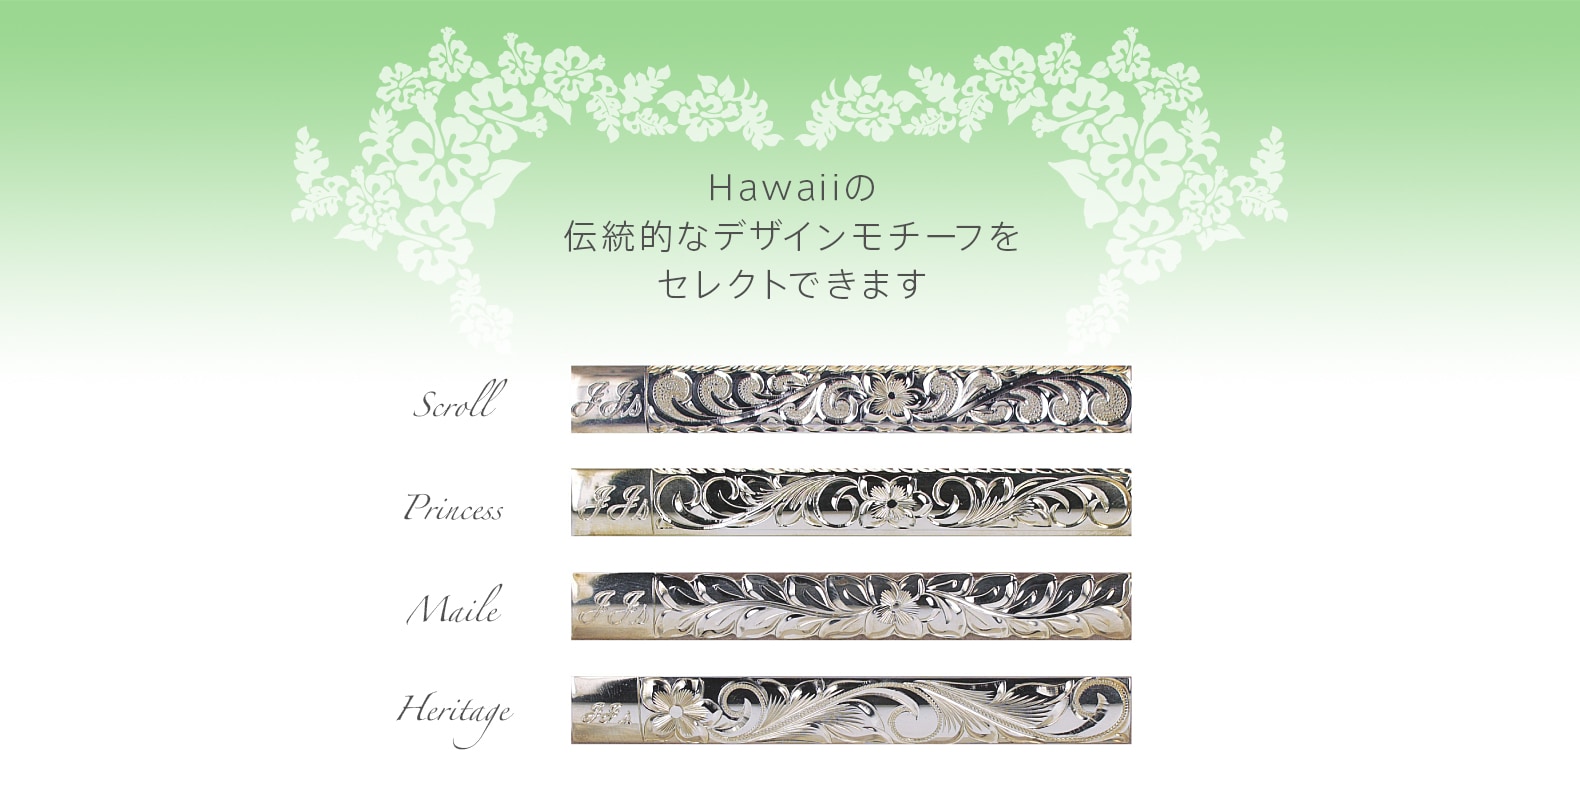 ハワイの伝統的なデザインモチーフをセレクトできるカスタムオーダーのオリジナルベビーリング